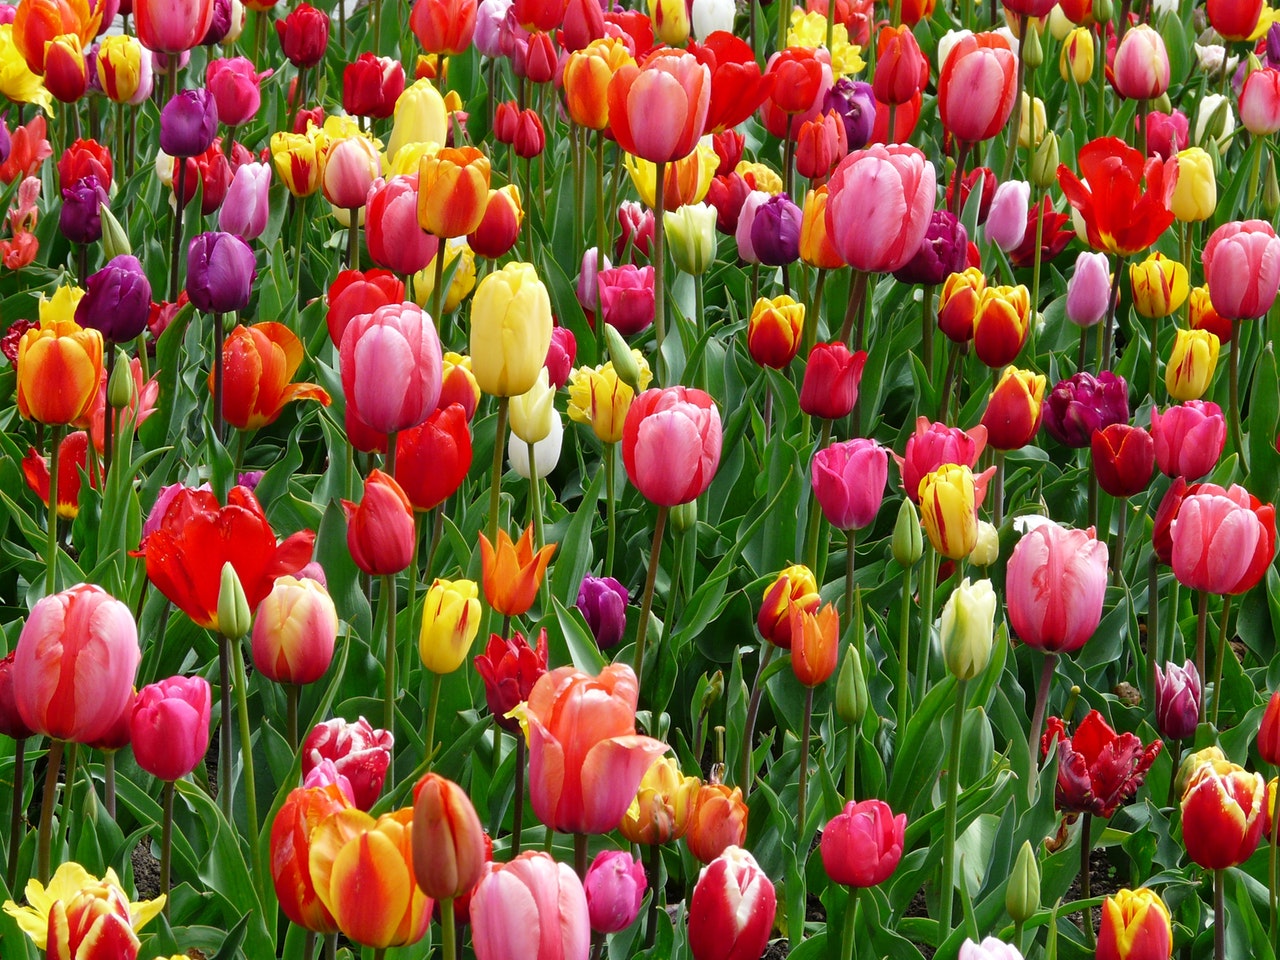 Canadian Tulip Festival: este ano o festival de tulipas do Canadá será online